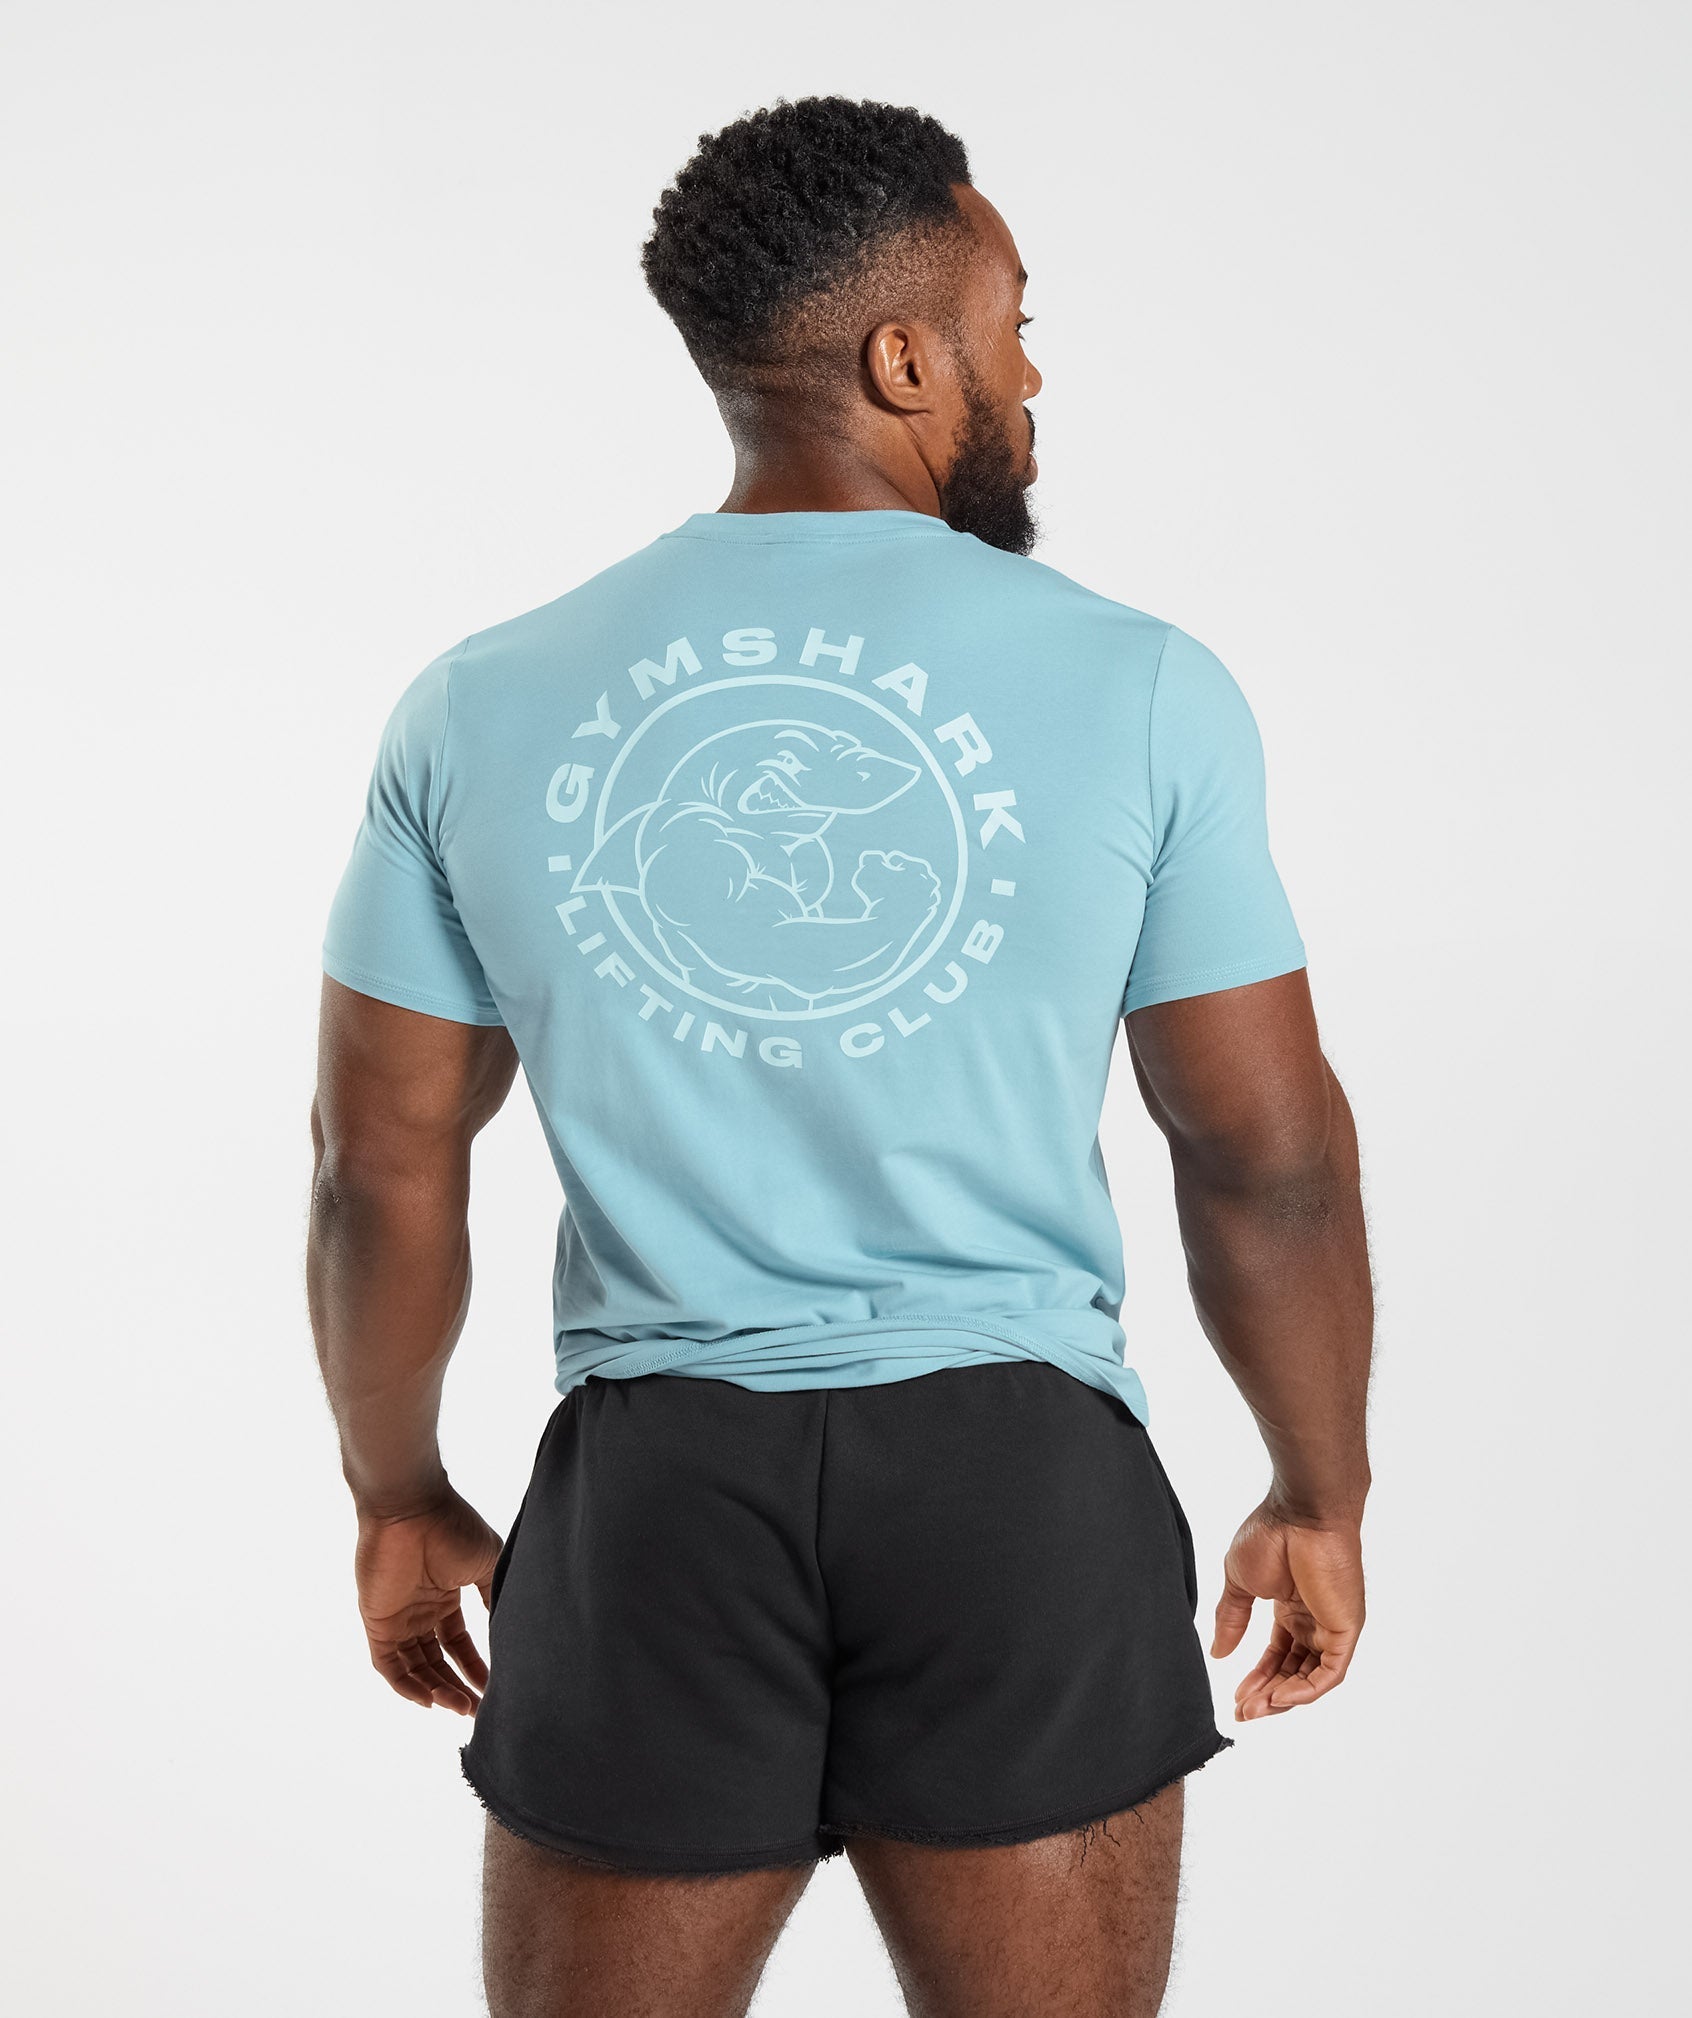 Gymshark Shirt Men Extra Large Navy Blue Logo Athletic Stretch